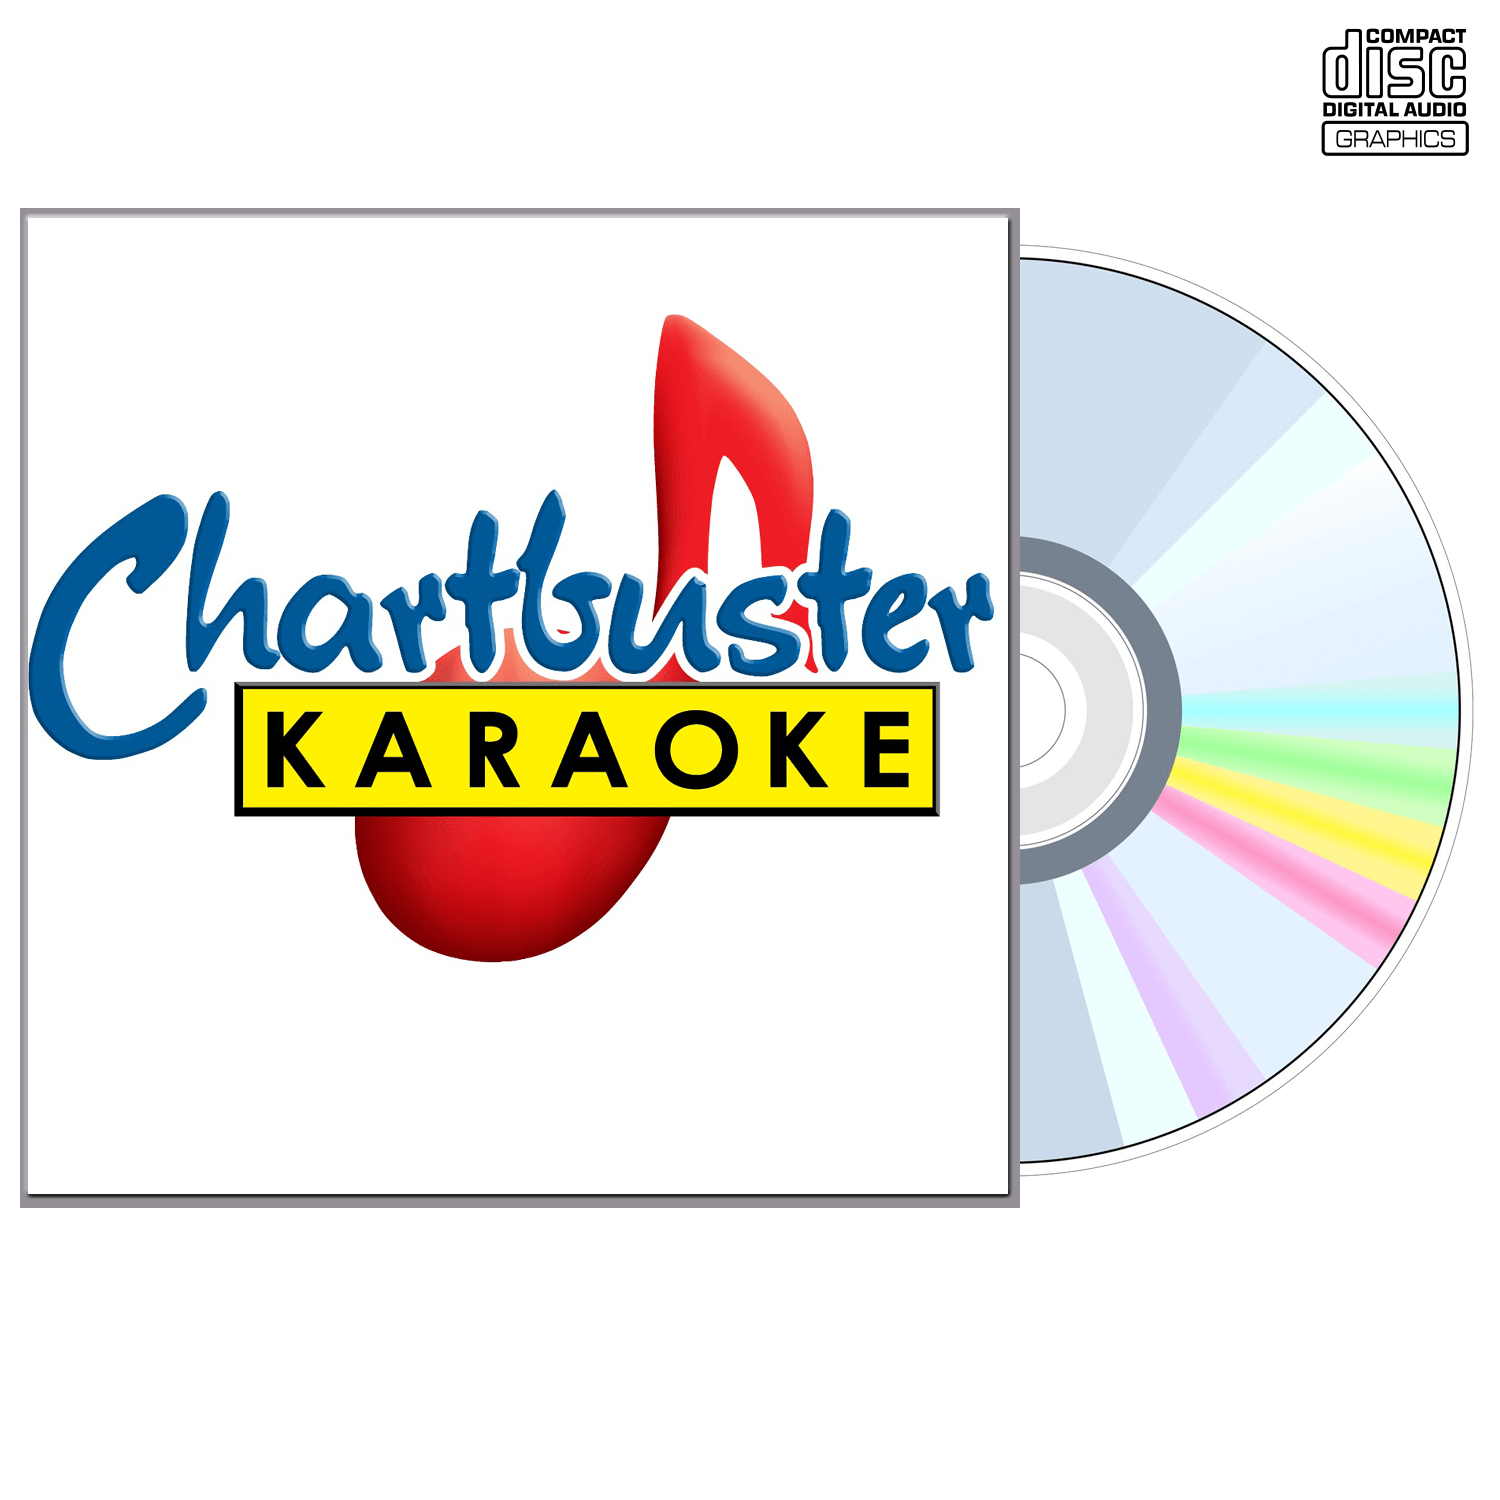 Tlc - CD+G - Chartbuster Karaoke - Karaoke Home Entertainment